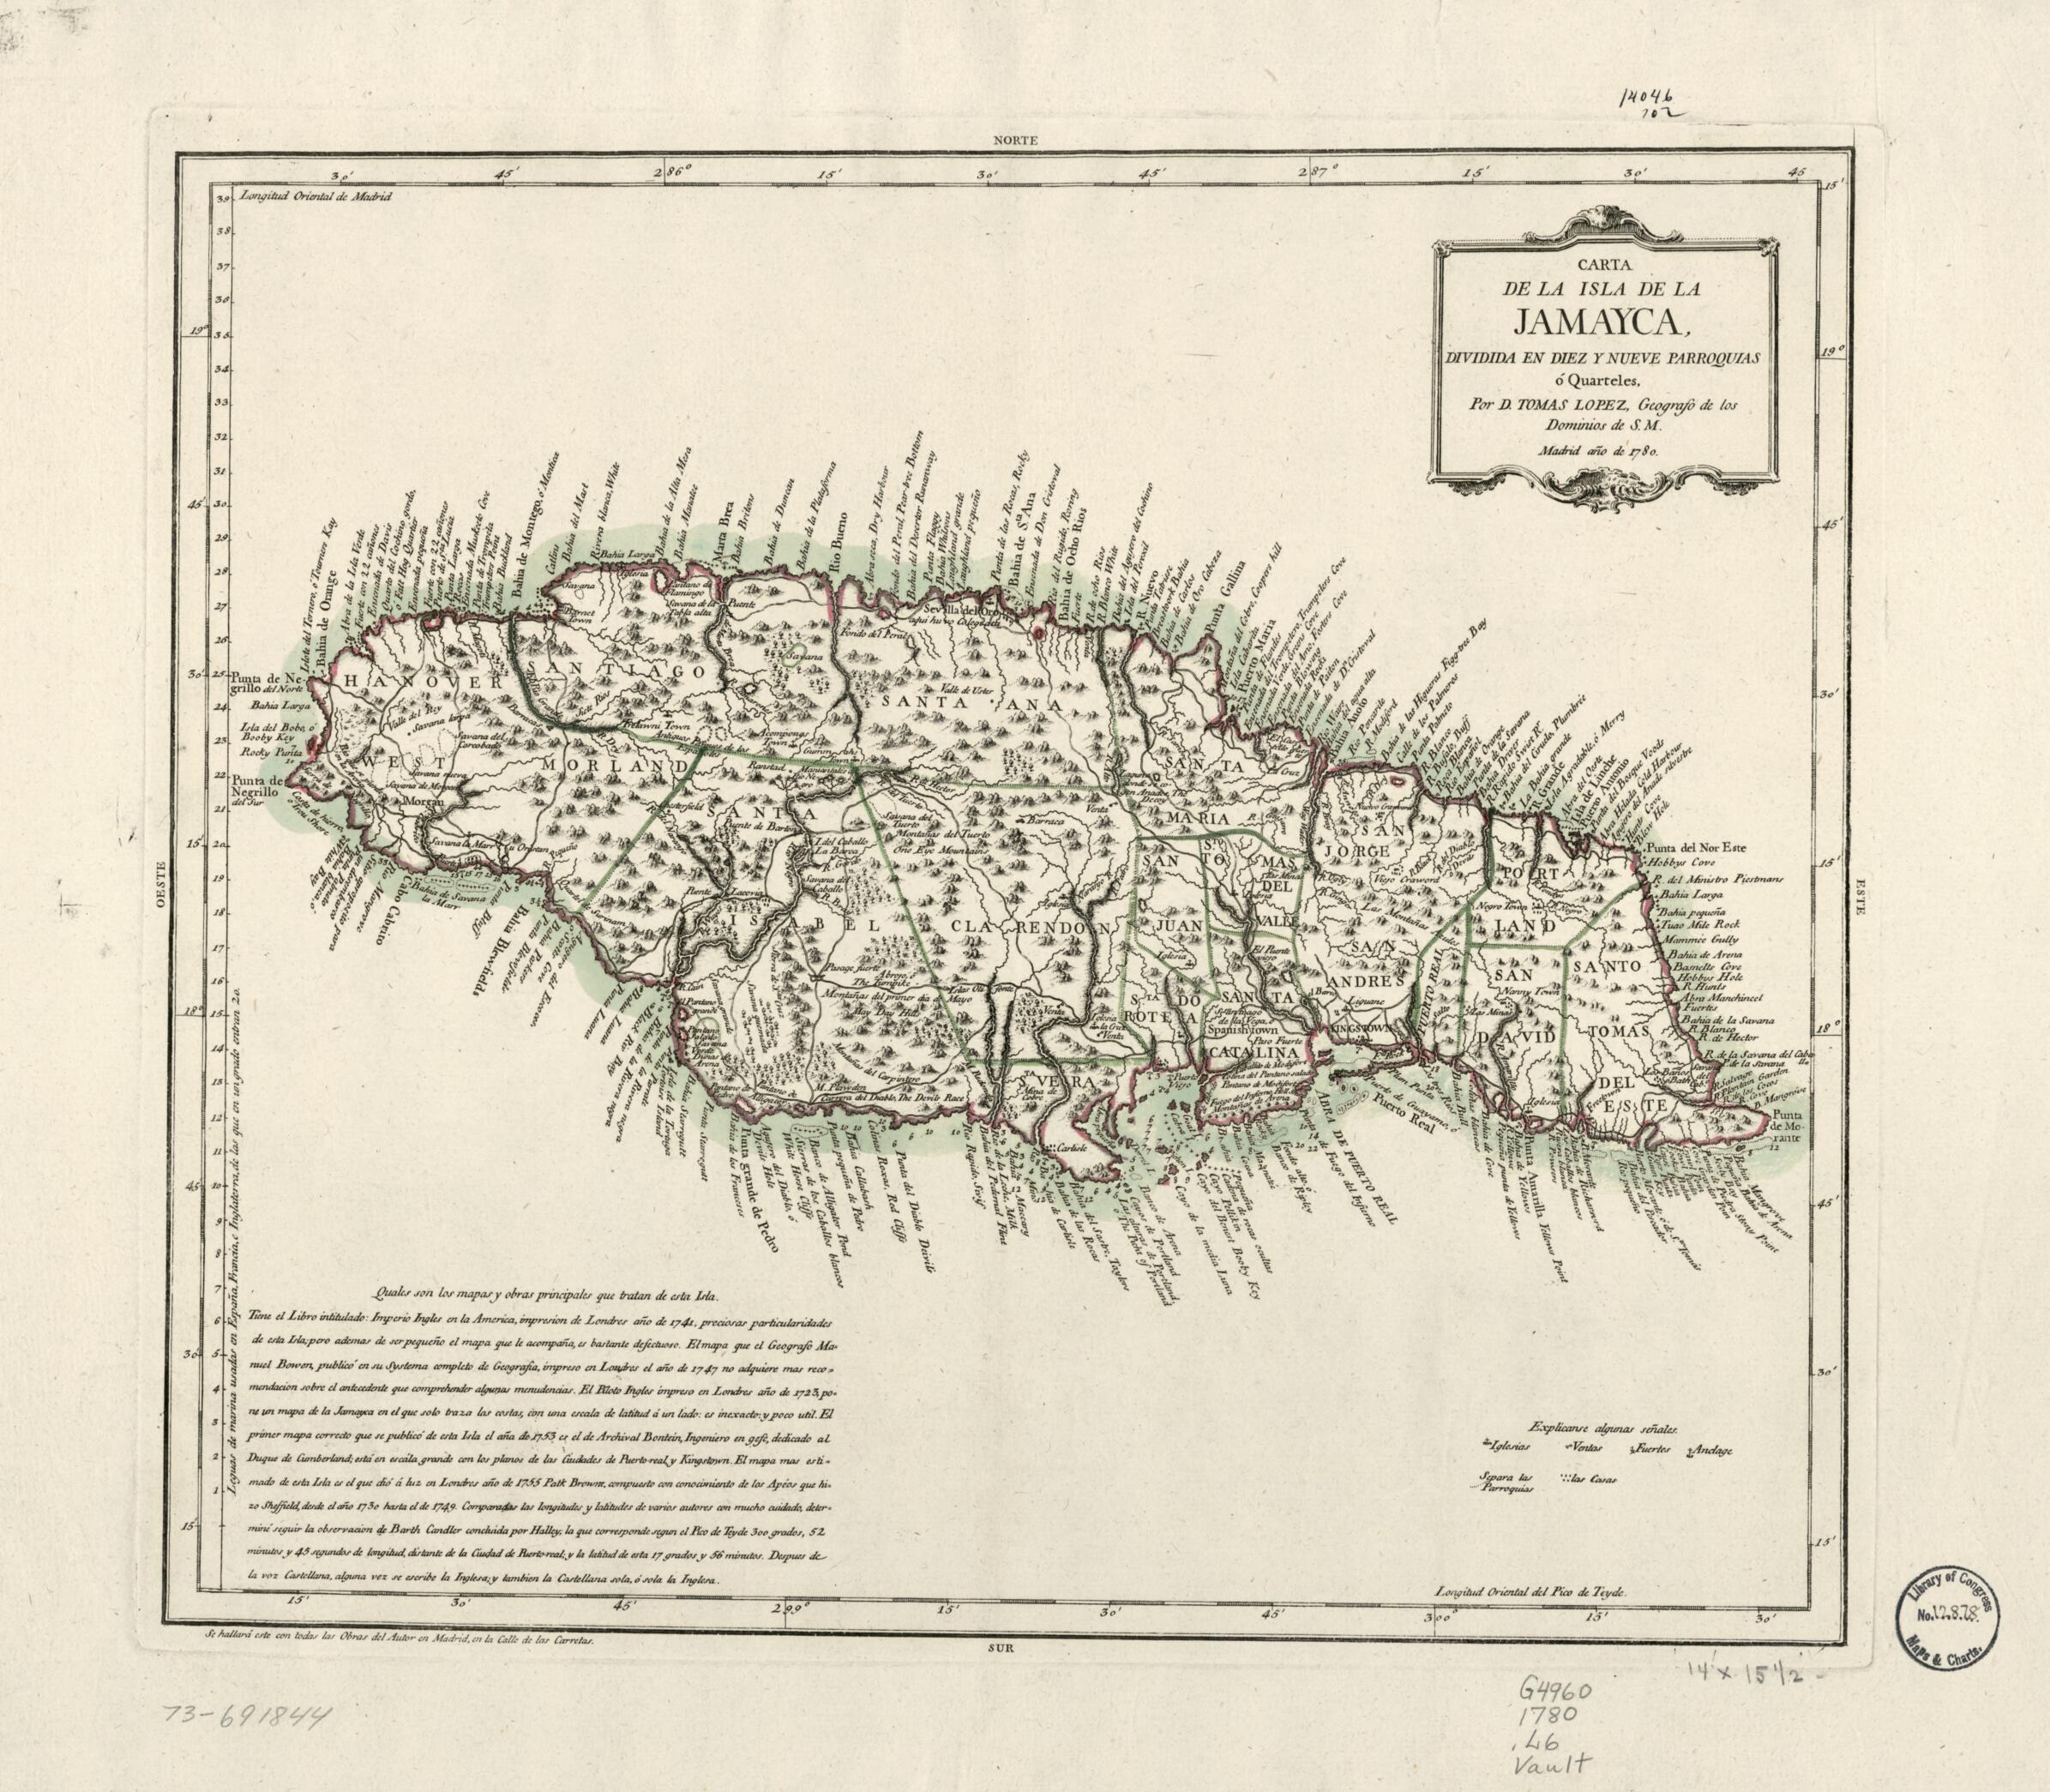 This old map of Carta De La Isla De La Jamayca; Dividida En Diez Y Nueve Parroquias ó Quarteles from 1780 was created by Tomás López De Vargas Machuca in 1780